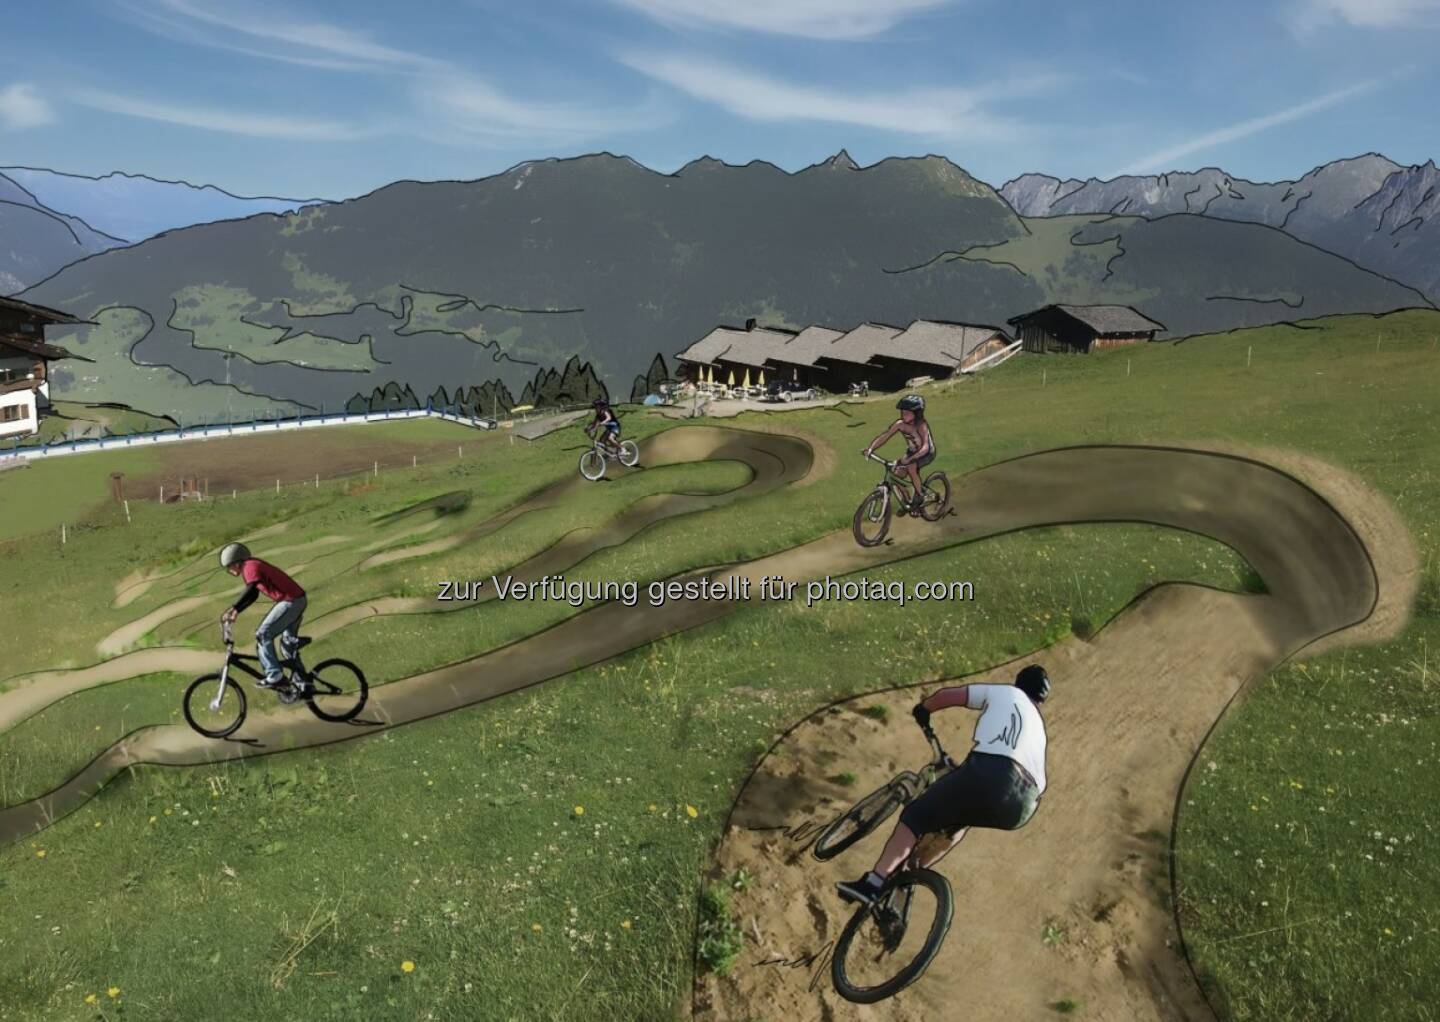 Ein Skills Area schult die Technik und Geschicklichkeit auf dem Bike - Kitzbüheler Alpen - St. Johann Oberndorf-Kirchdorf-Erpfendorf: Region St. Johann in Tirol zündet den Bike-Turbo (Fotocredit: Allegra Tourismus)